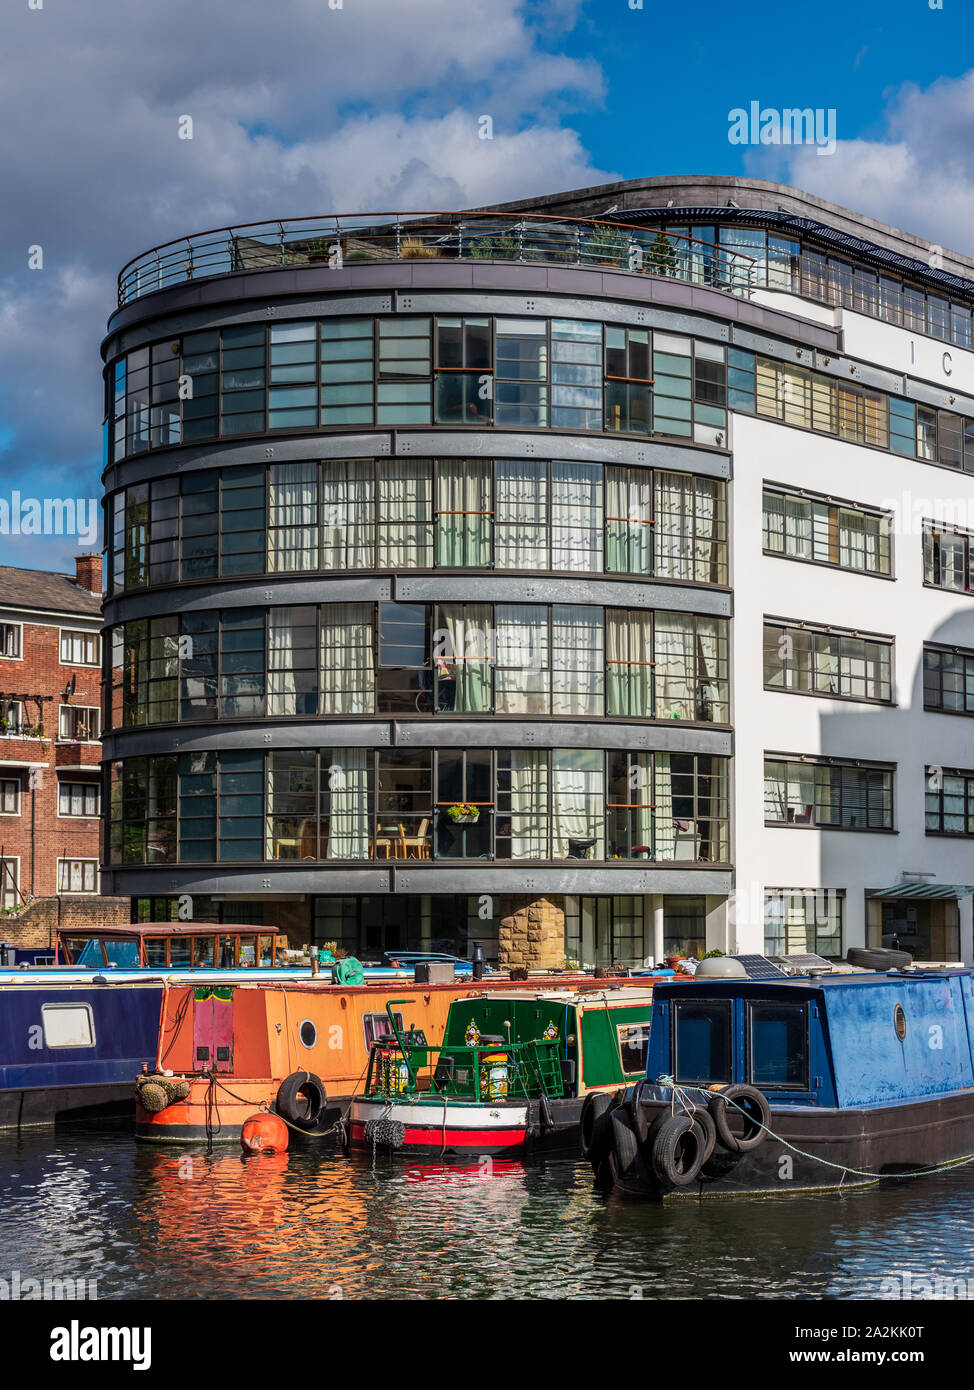 Am Kanal gelegenes Wohn- Apartments und Hausbooten in Battlebridge Becken auf dem Londoner Regents Canal. Stockfoto